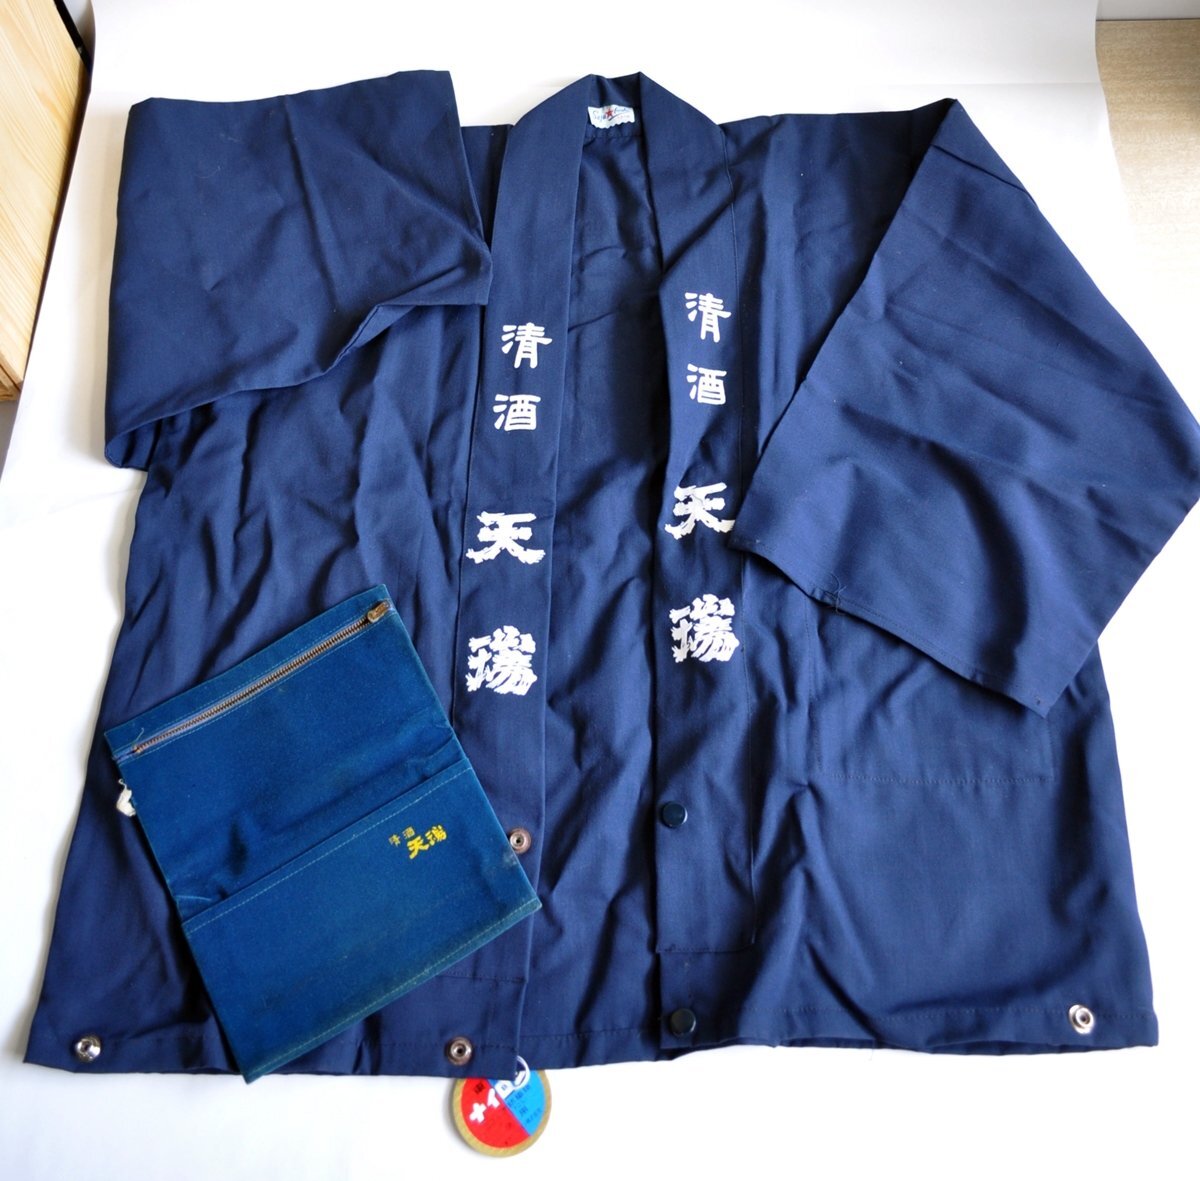 [W3931] Yamagata. японкое рисовое вино (sake) [ Kiyoshi sake небо .( тонн zi)] пальто happi . пакет комплект /. .. с биркой retro античный индиго цвет переделка ткань б/у товар 